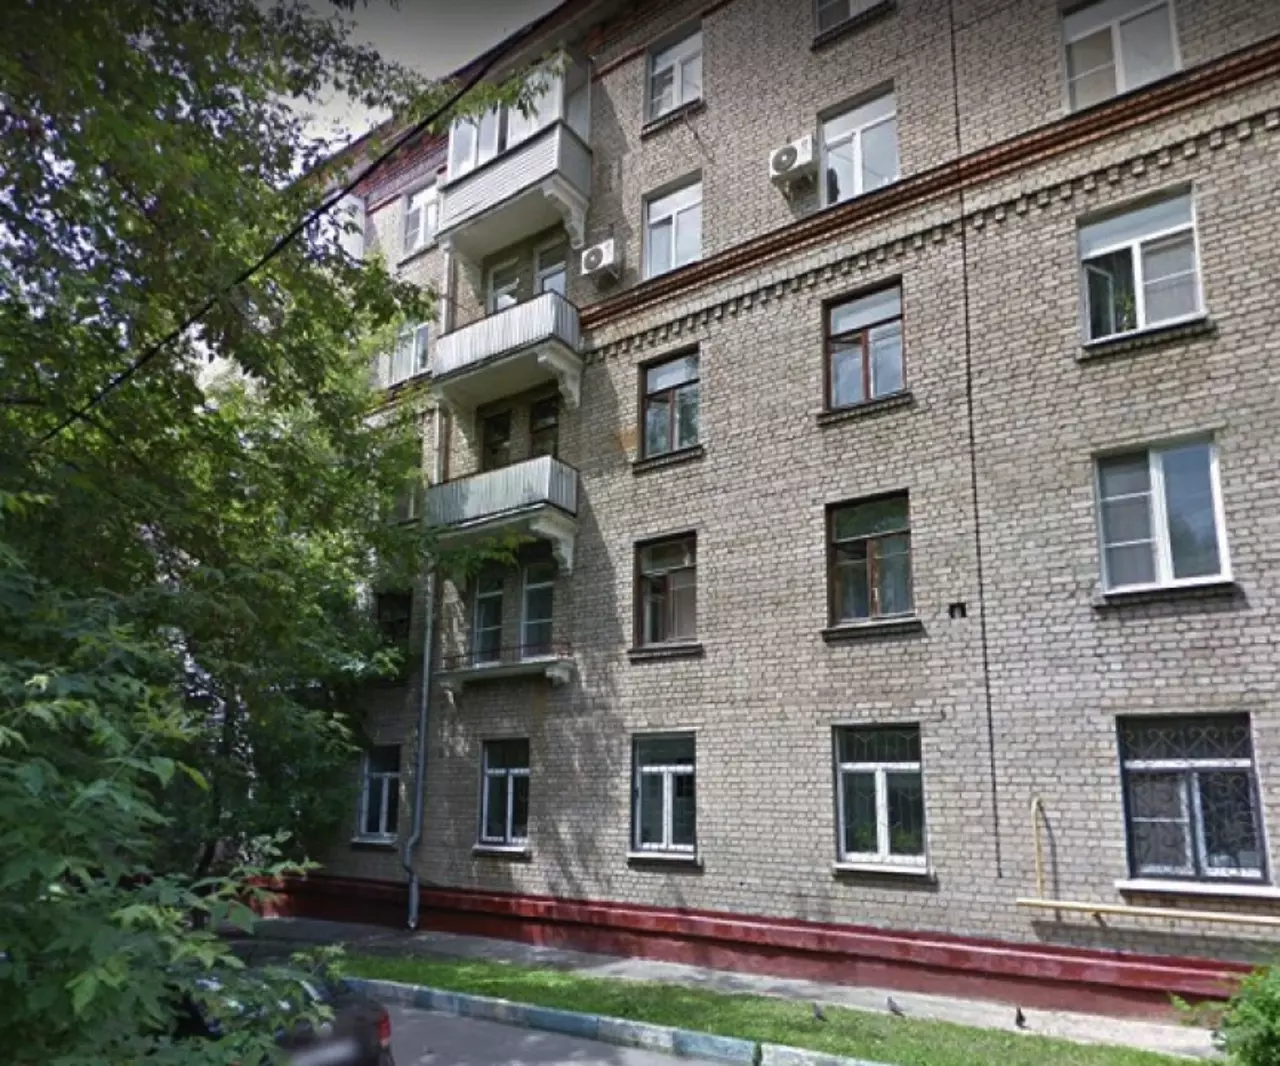 Продам квартиру в Москве по адресу Каширское шоссе, 56к2, площадь 16 квм Недвижимость Москва (Россия)  Район отличается развитой социальной инфраструктурой, удобной транспортной доступностью до центра города и других районов столицы